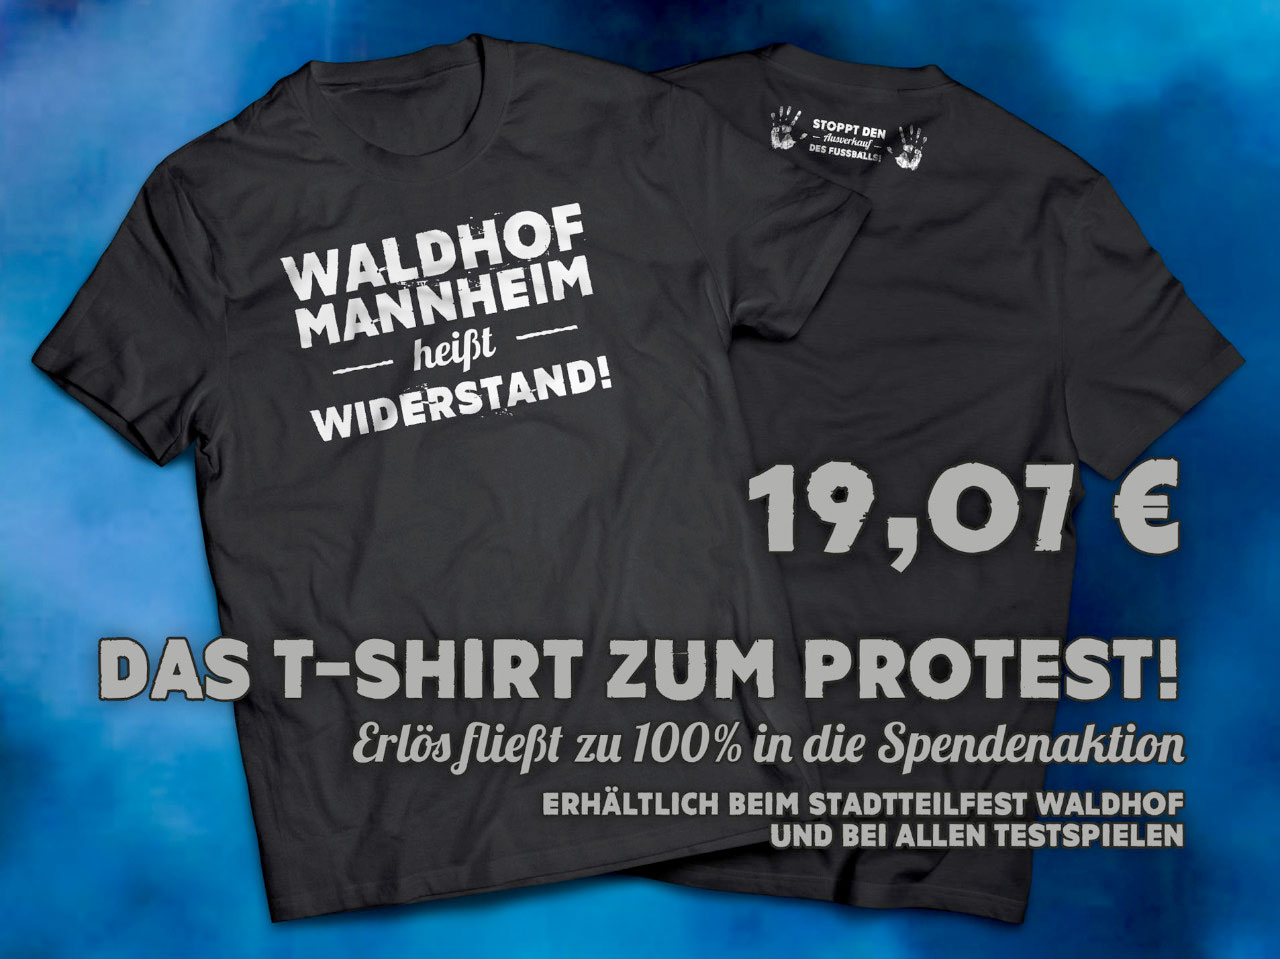 Waldhof Mannheim heißt Widerstand! – Das Motto-T-Shirt zum Protest